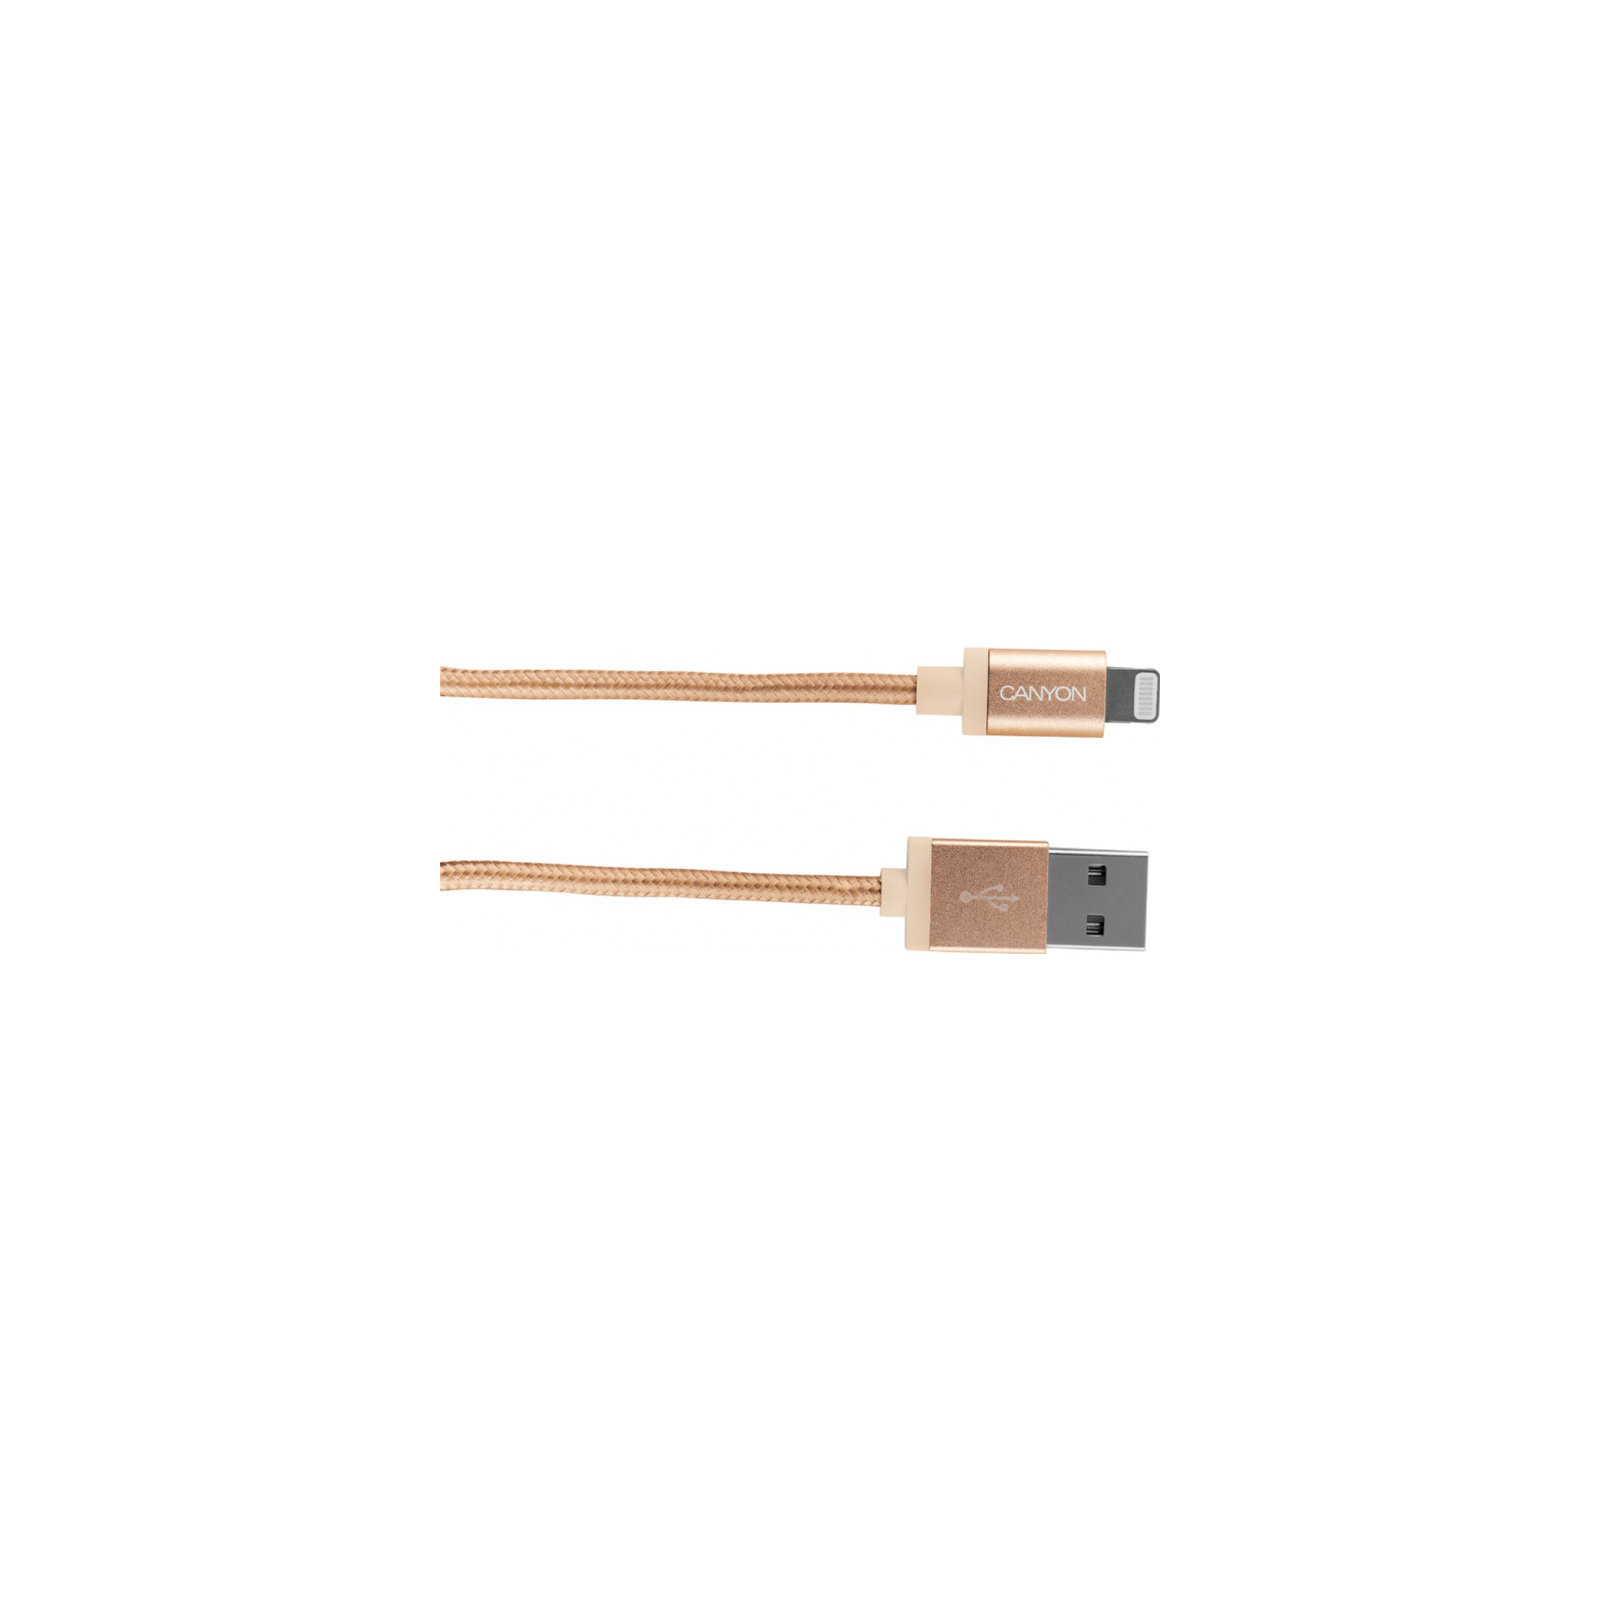 Дата кабель USB 2.0 AM to Lightning 1.0m MFI Golden Canyon (CNS-MFIC3GO) изображение 2